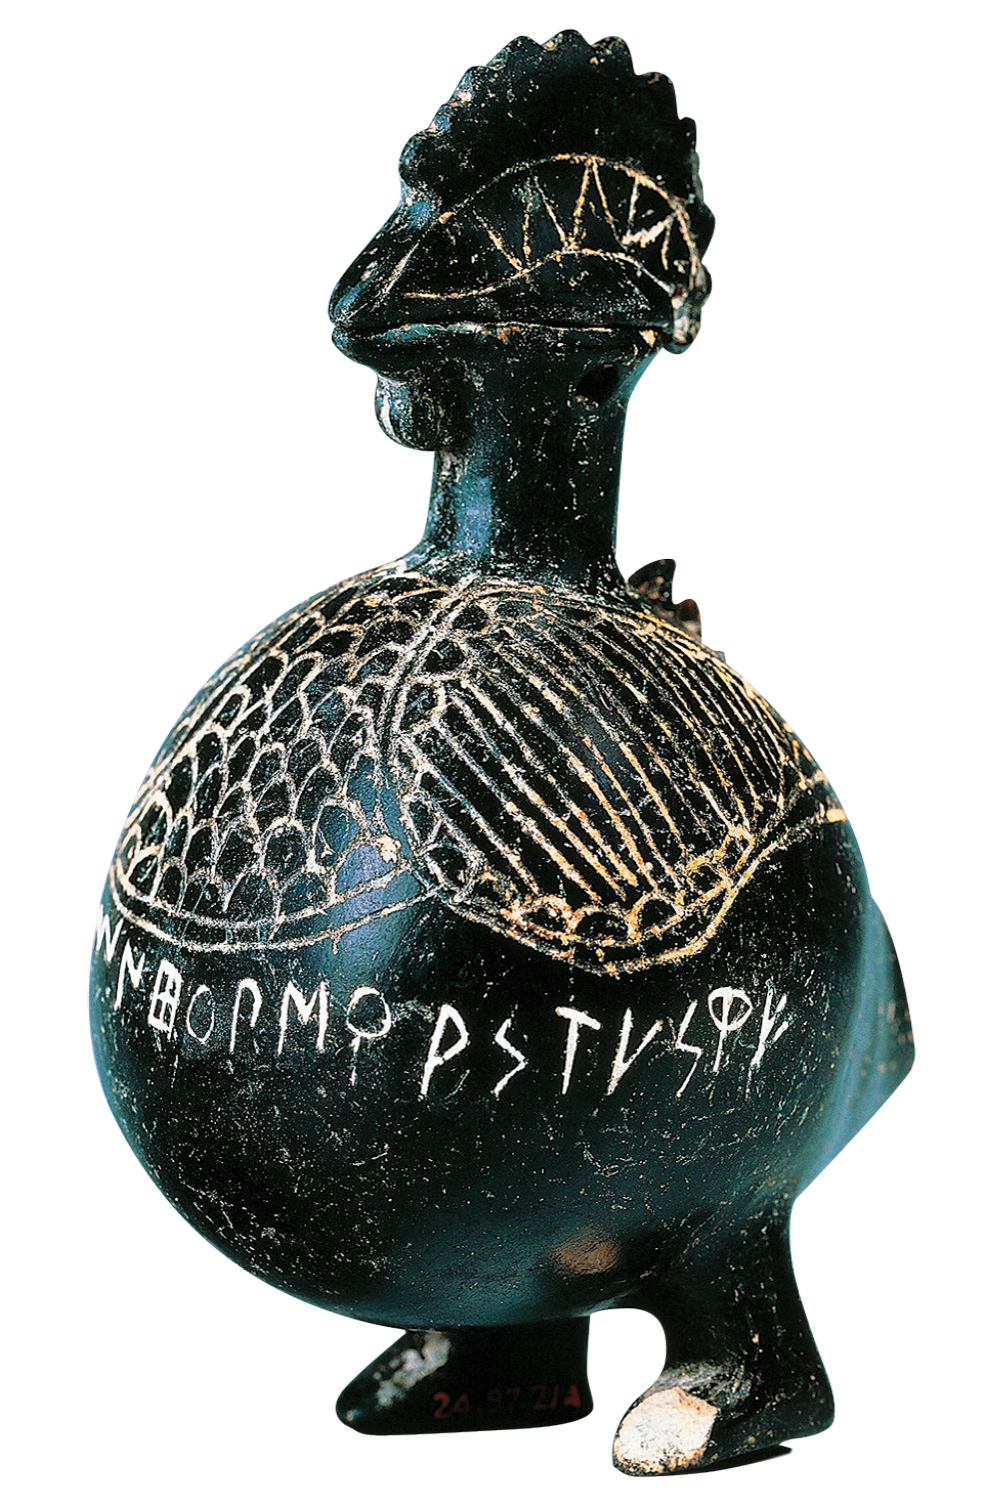 Fotografia. Vaso de cerâmica escuro com forma de uma animal com bico, crista e duas patas. No vaso há linhas tracejadas e elementos da escrita etrusca.